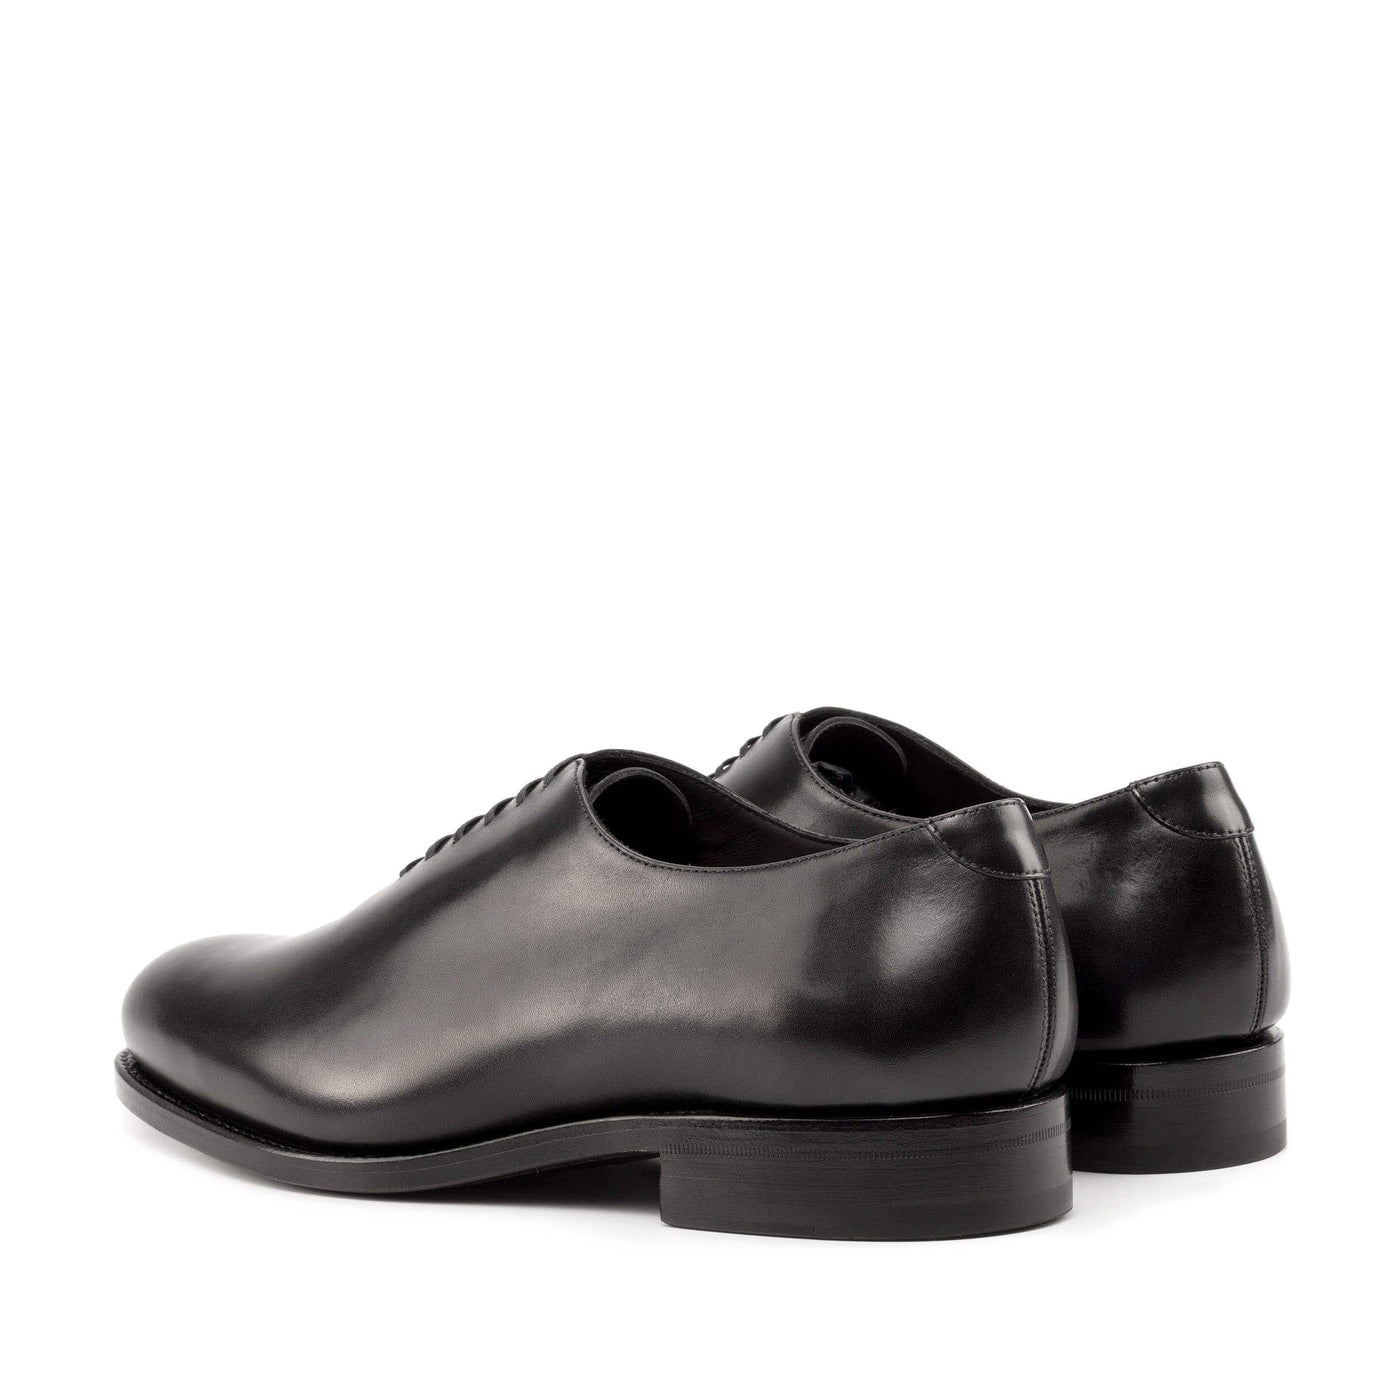 Men's Wholecut Shoes Leather Goodyear Welt Black 5021 4- MERRIMIUM